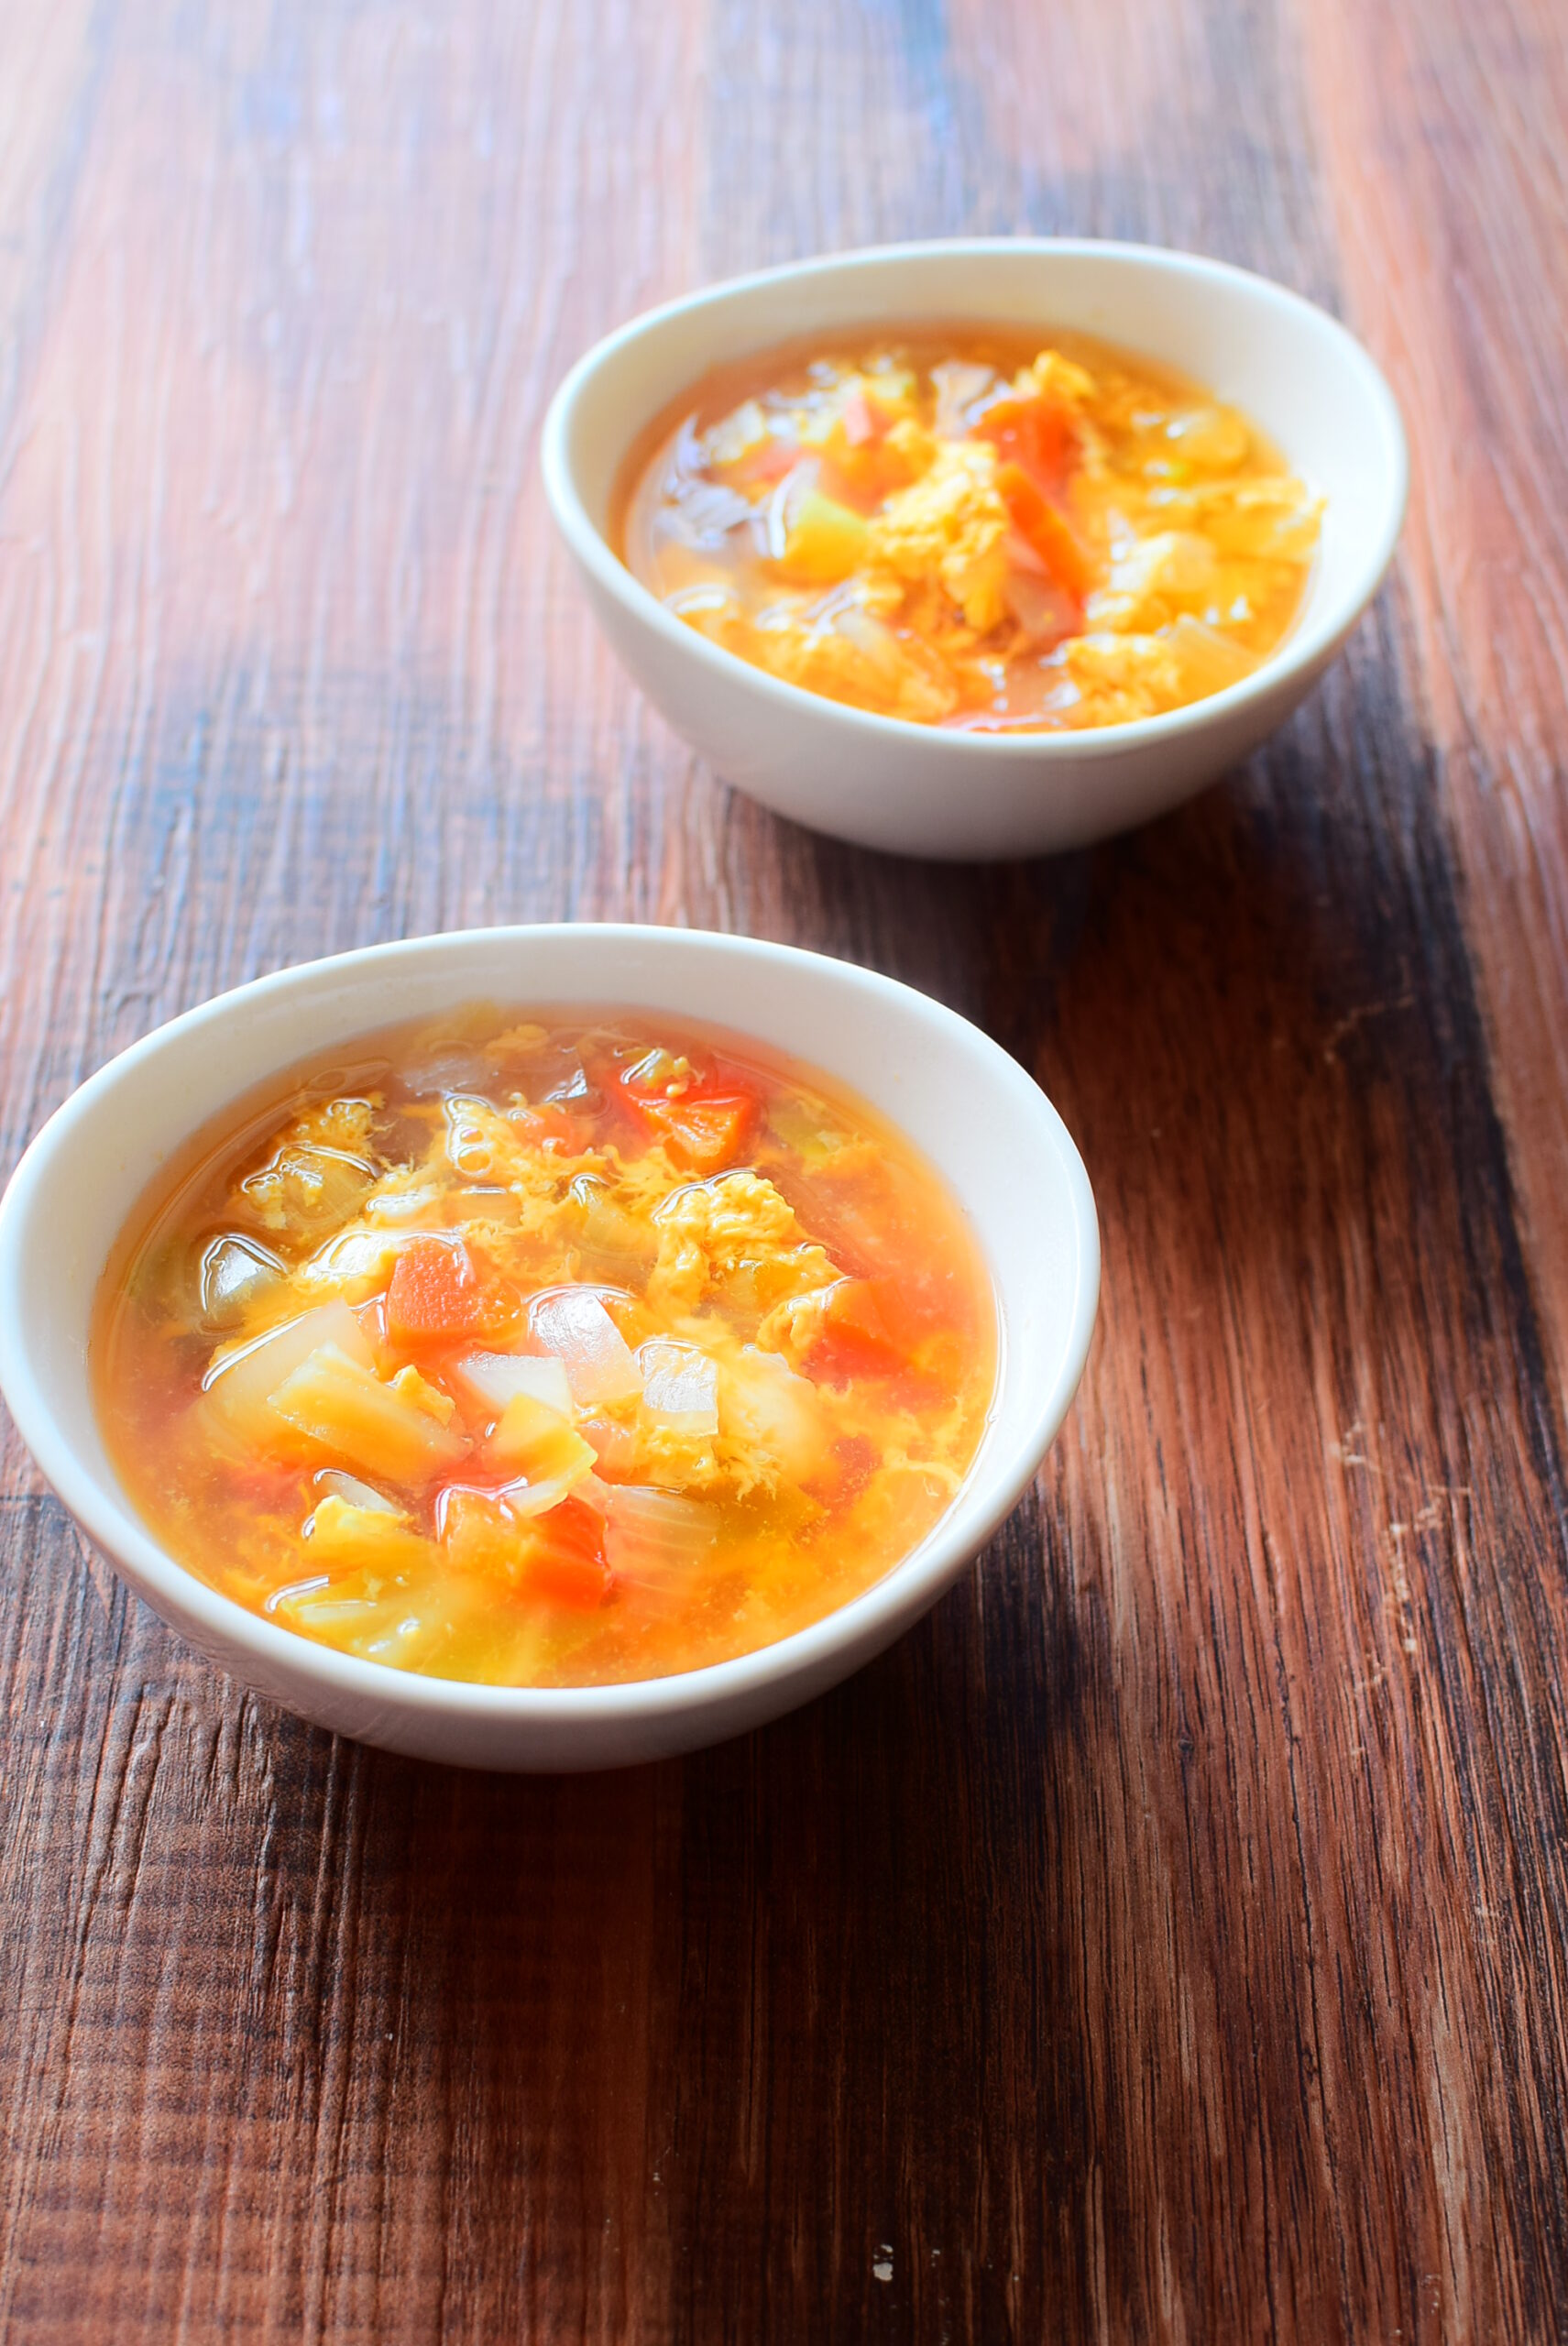 味付けはめんつゆだけ！野菜たまごスープのレシピの写真